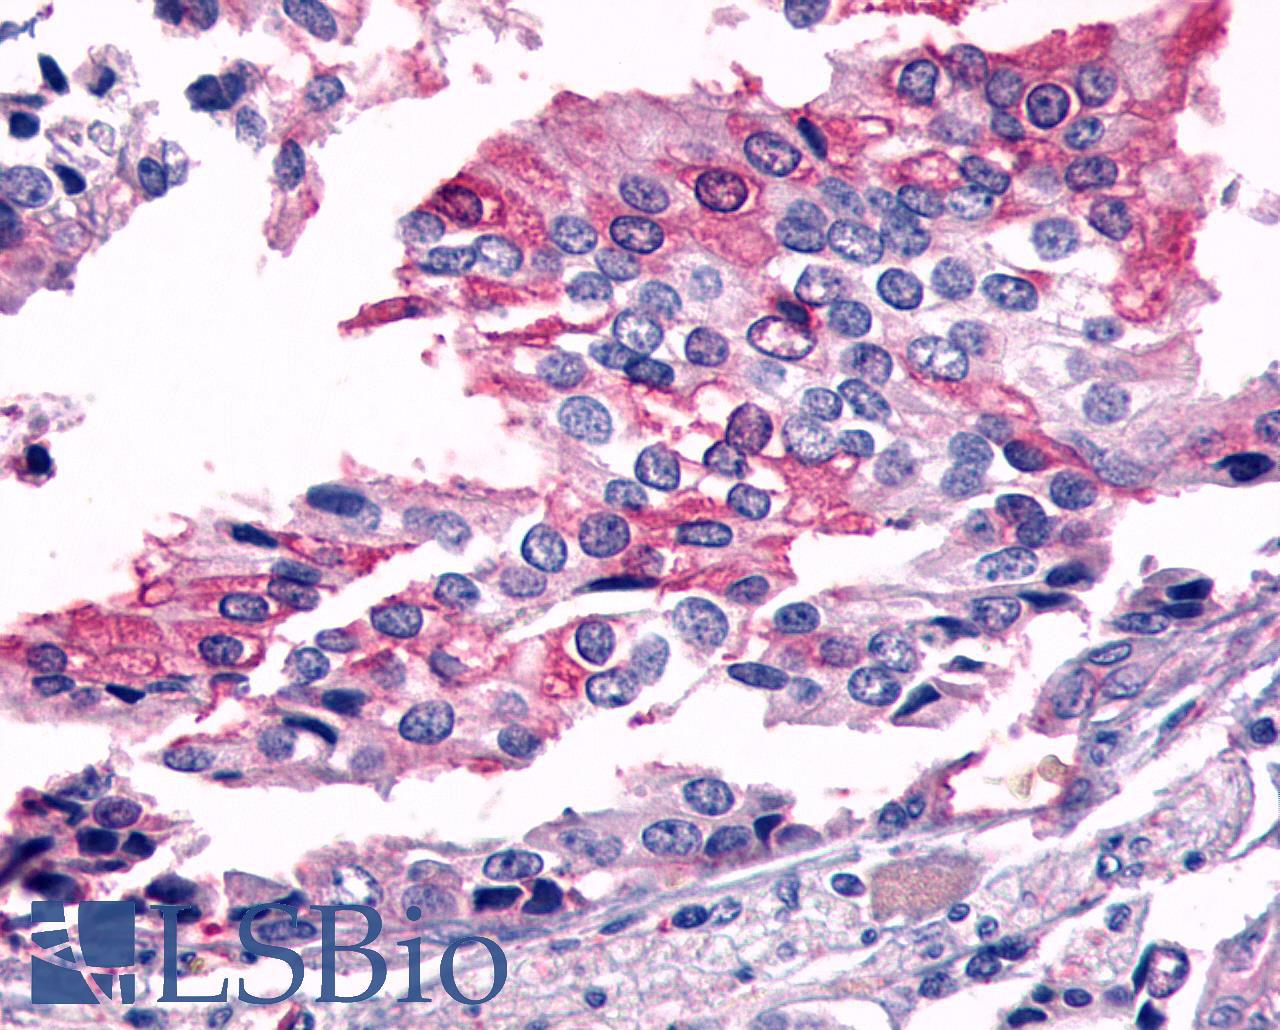 FZD7 / Frizzled 7 Antibody - Prostate carcinoma